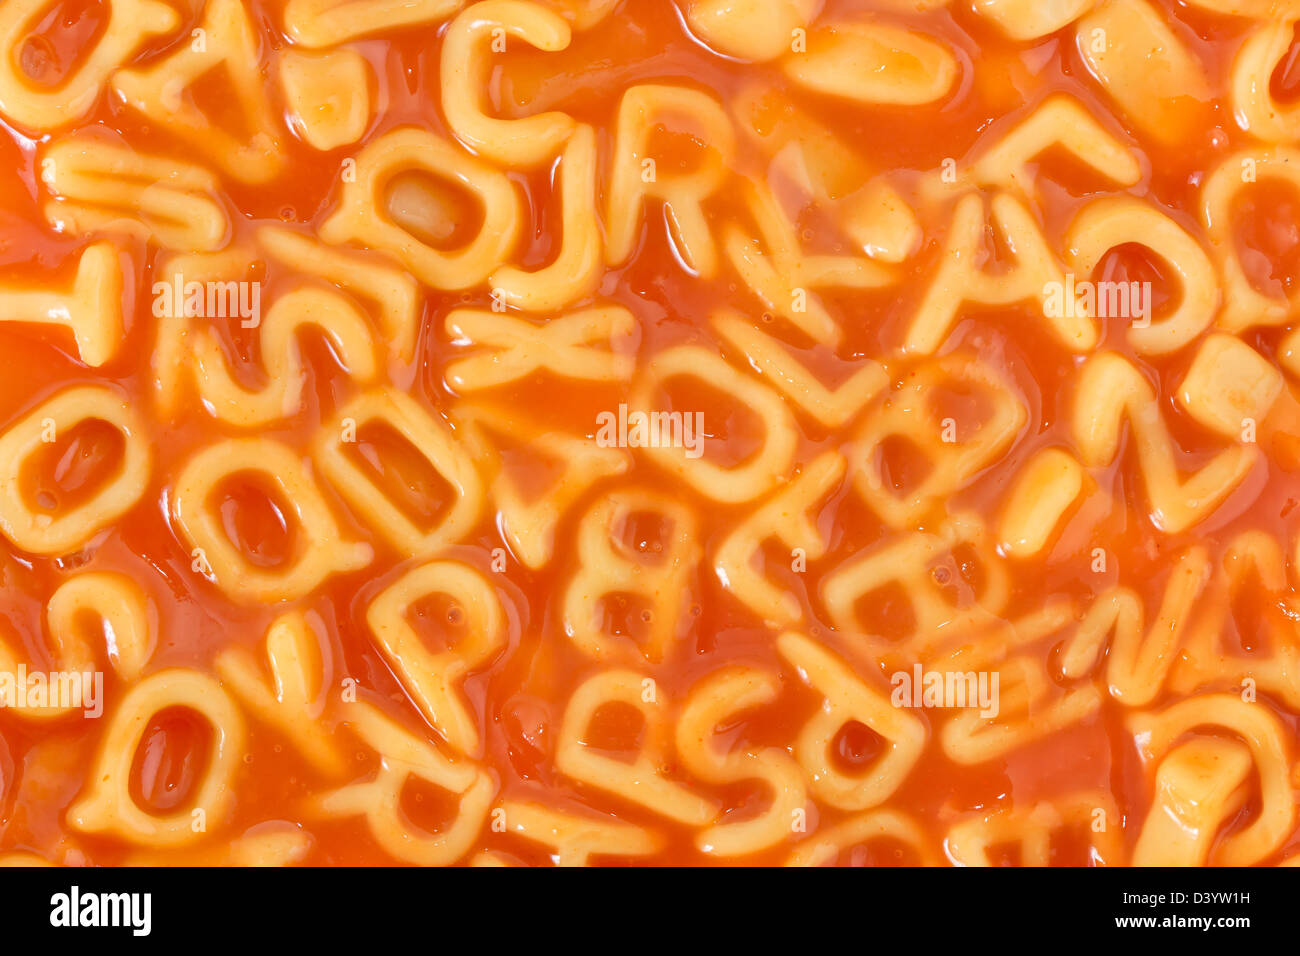 Hintergrund der Nudeln geformt Alphabet Buchstaben in einer Tomatensauce Stockfoto